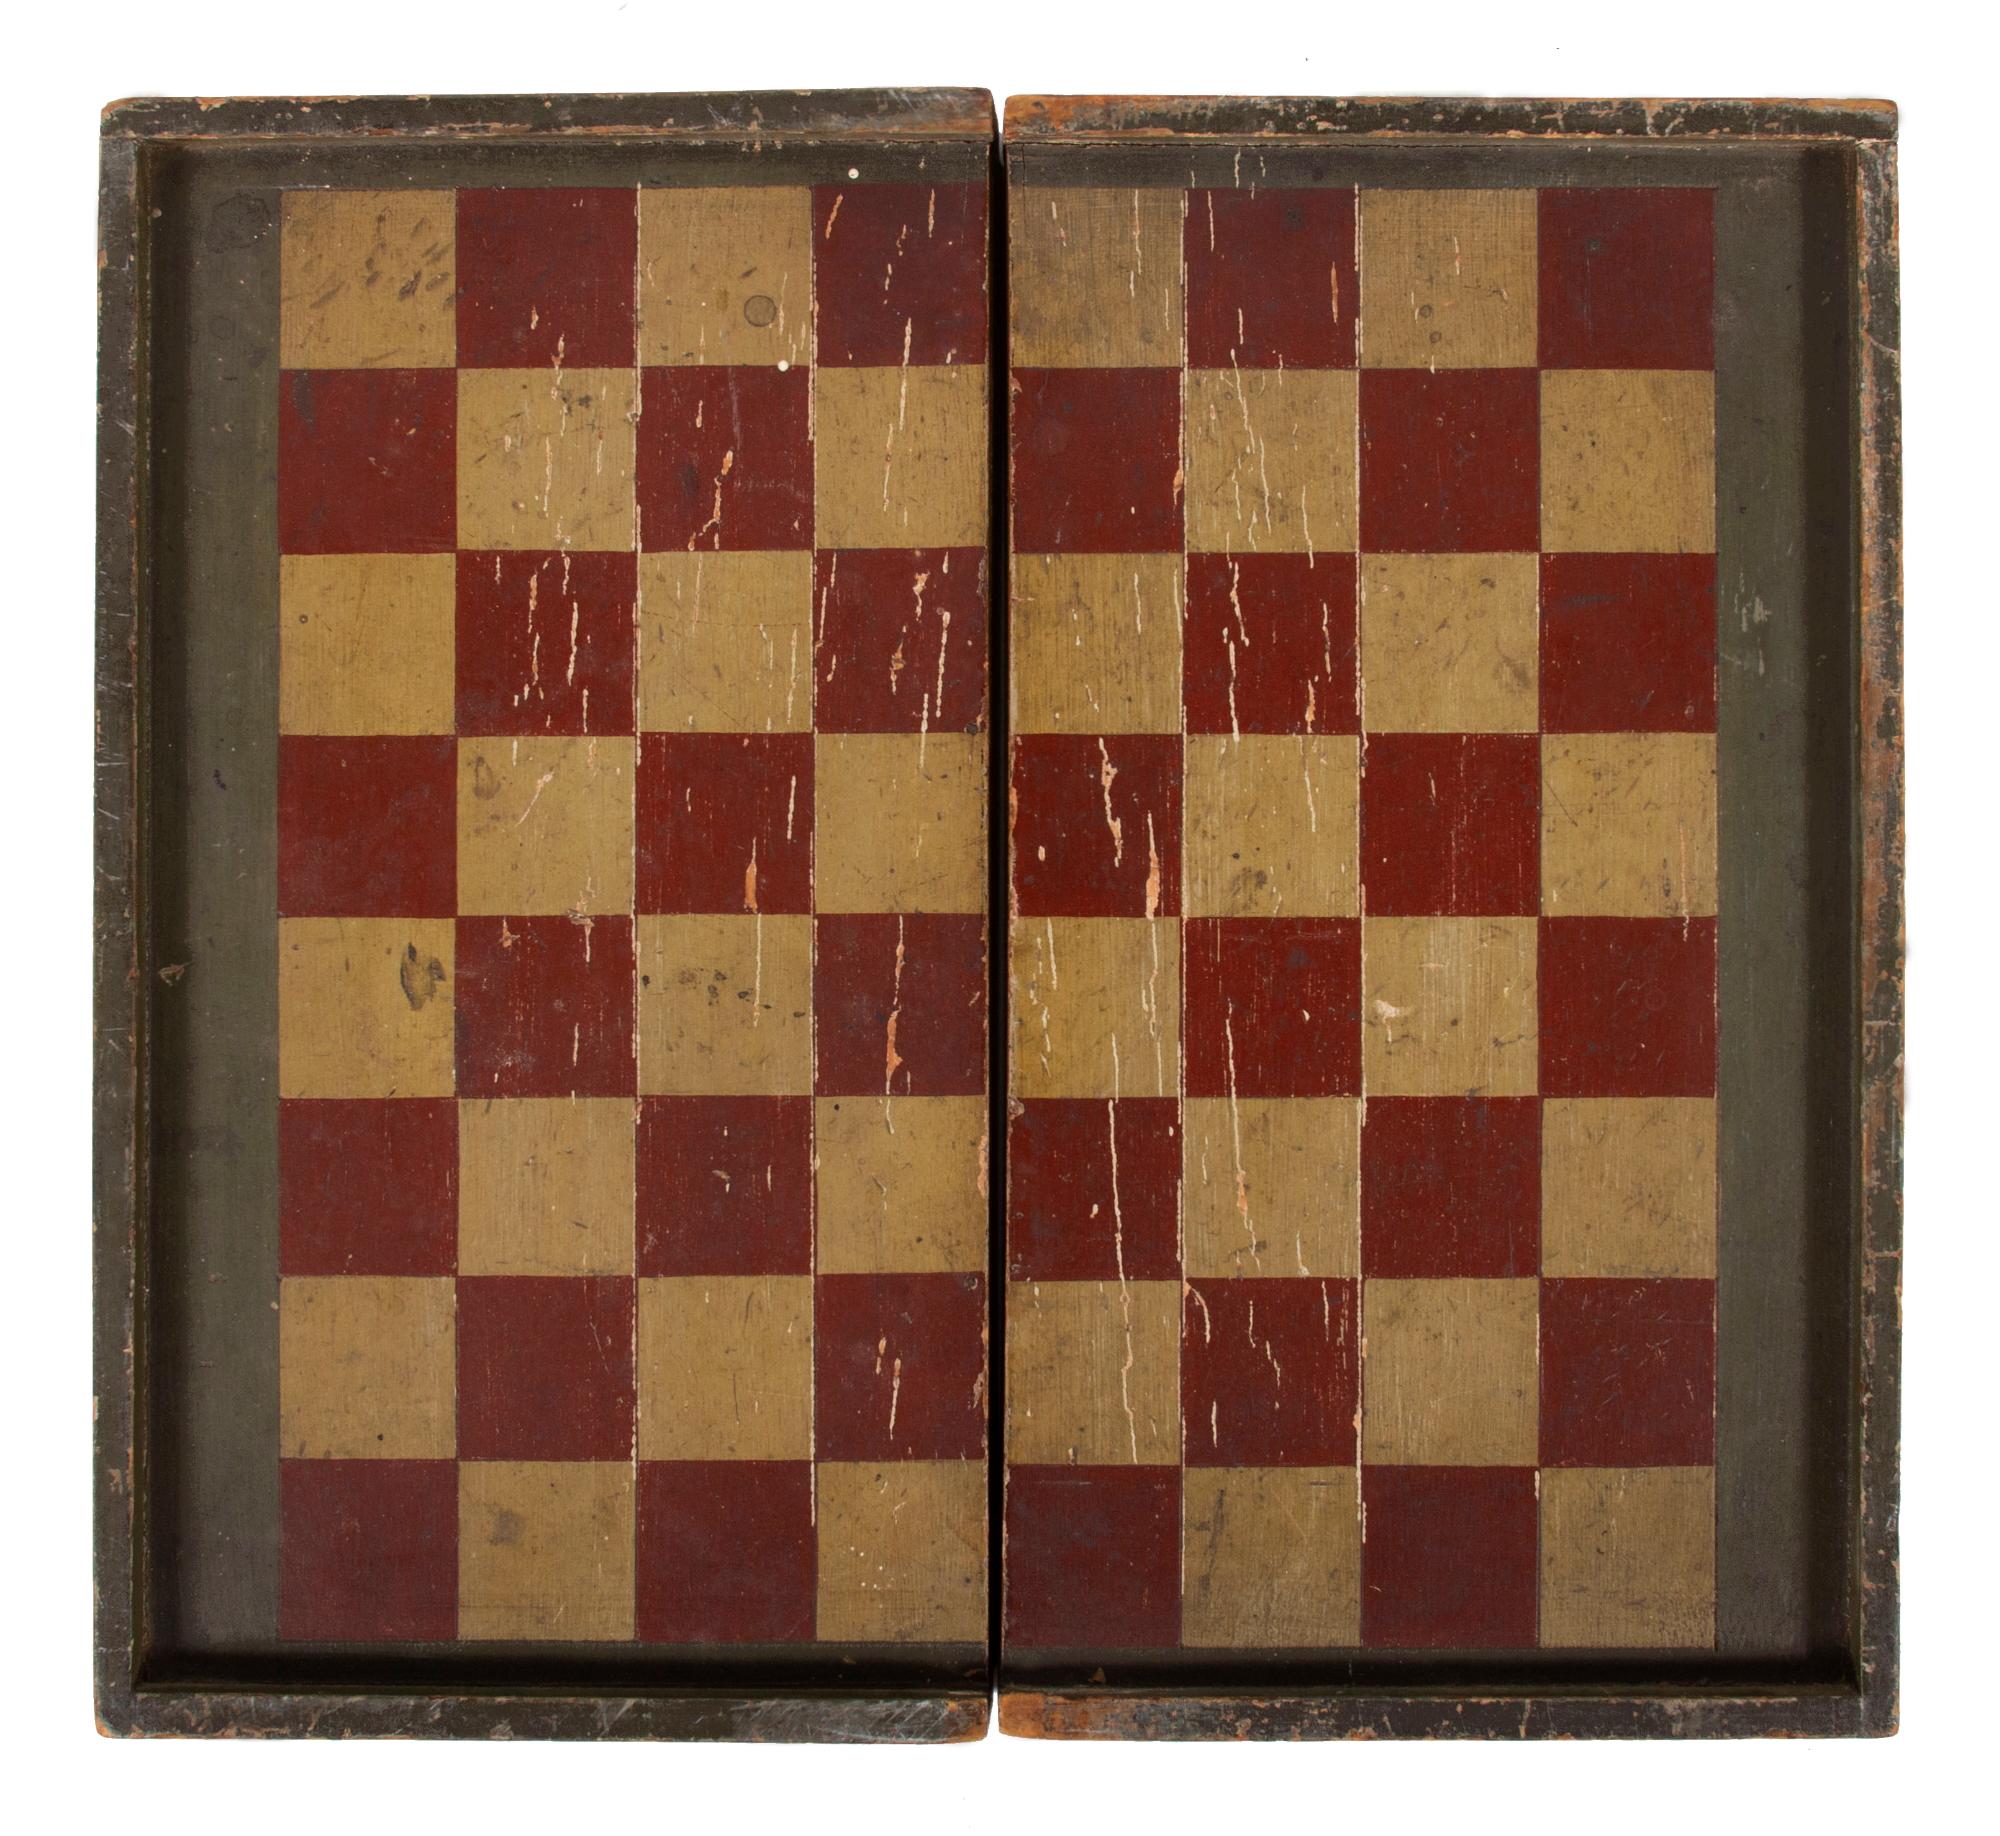 Rotes, schwarzes und ockerfarbenes, weiß bemaltes, aufklappbares Backgammon-Spielbrett mit blattartigen Medaillons, um 1870-1890

Amerikanisches Backgammon- und Schachbrett aus Weichholz, mit einem an einem Ende handverzahnten und am anderen Ende